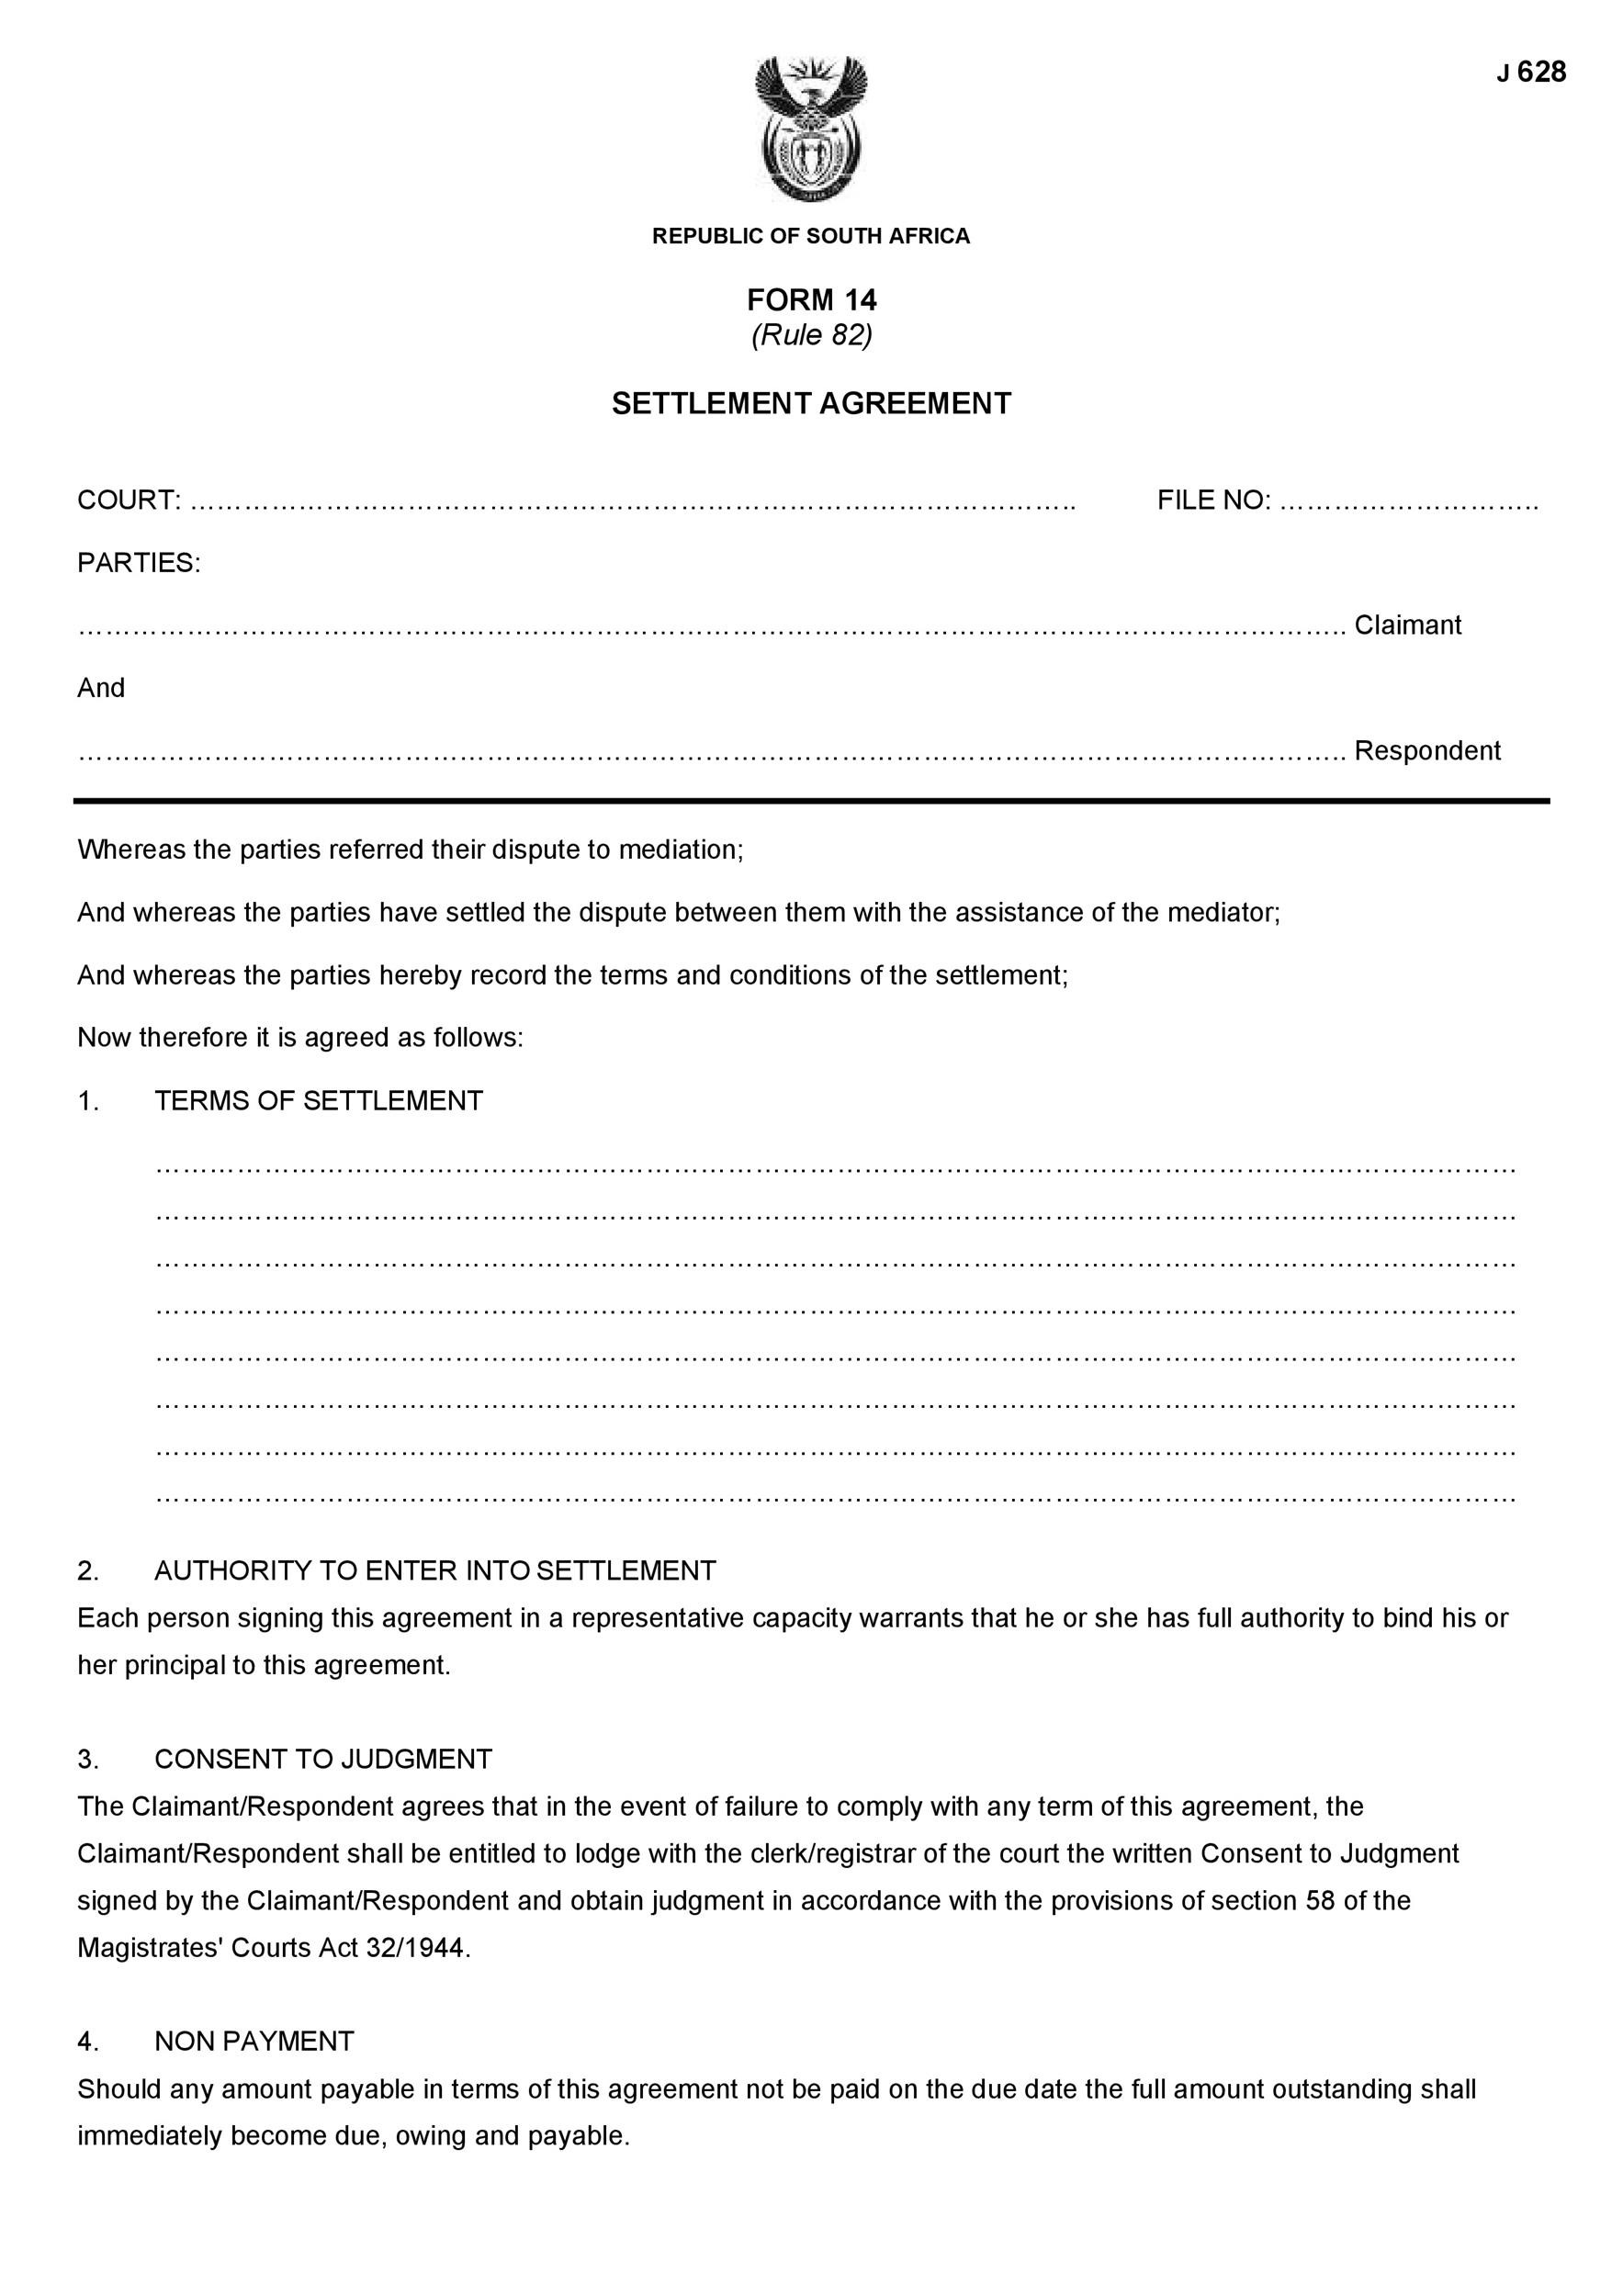 Free settlement agreement 08